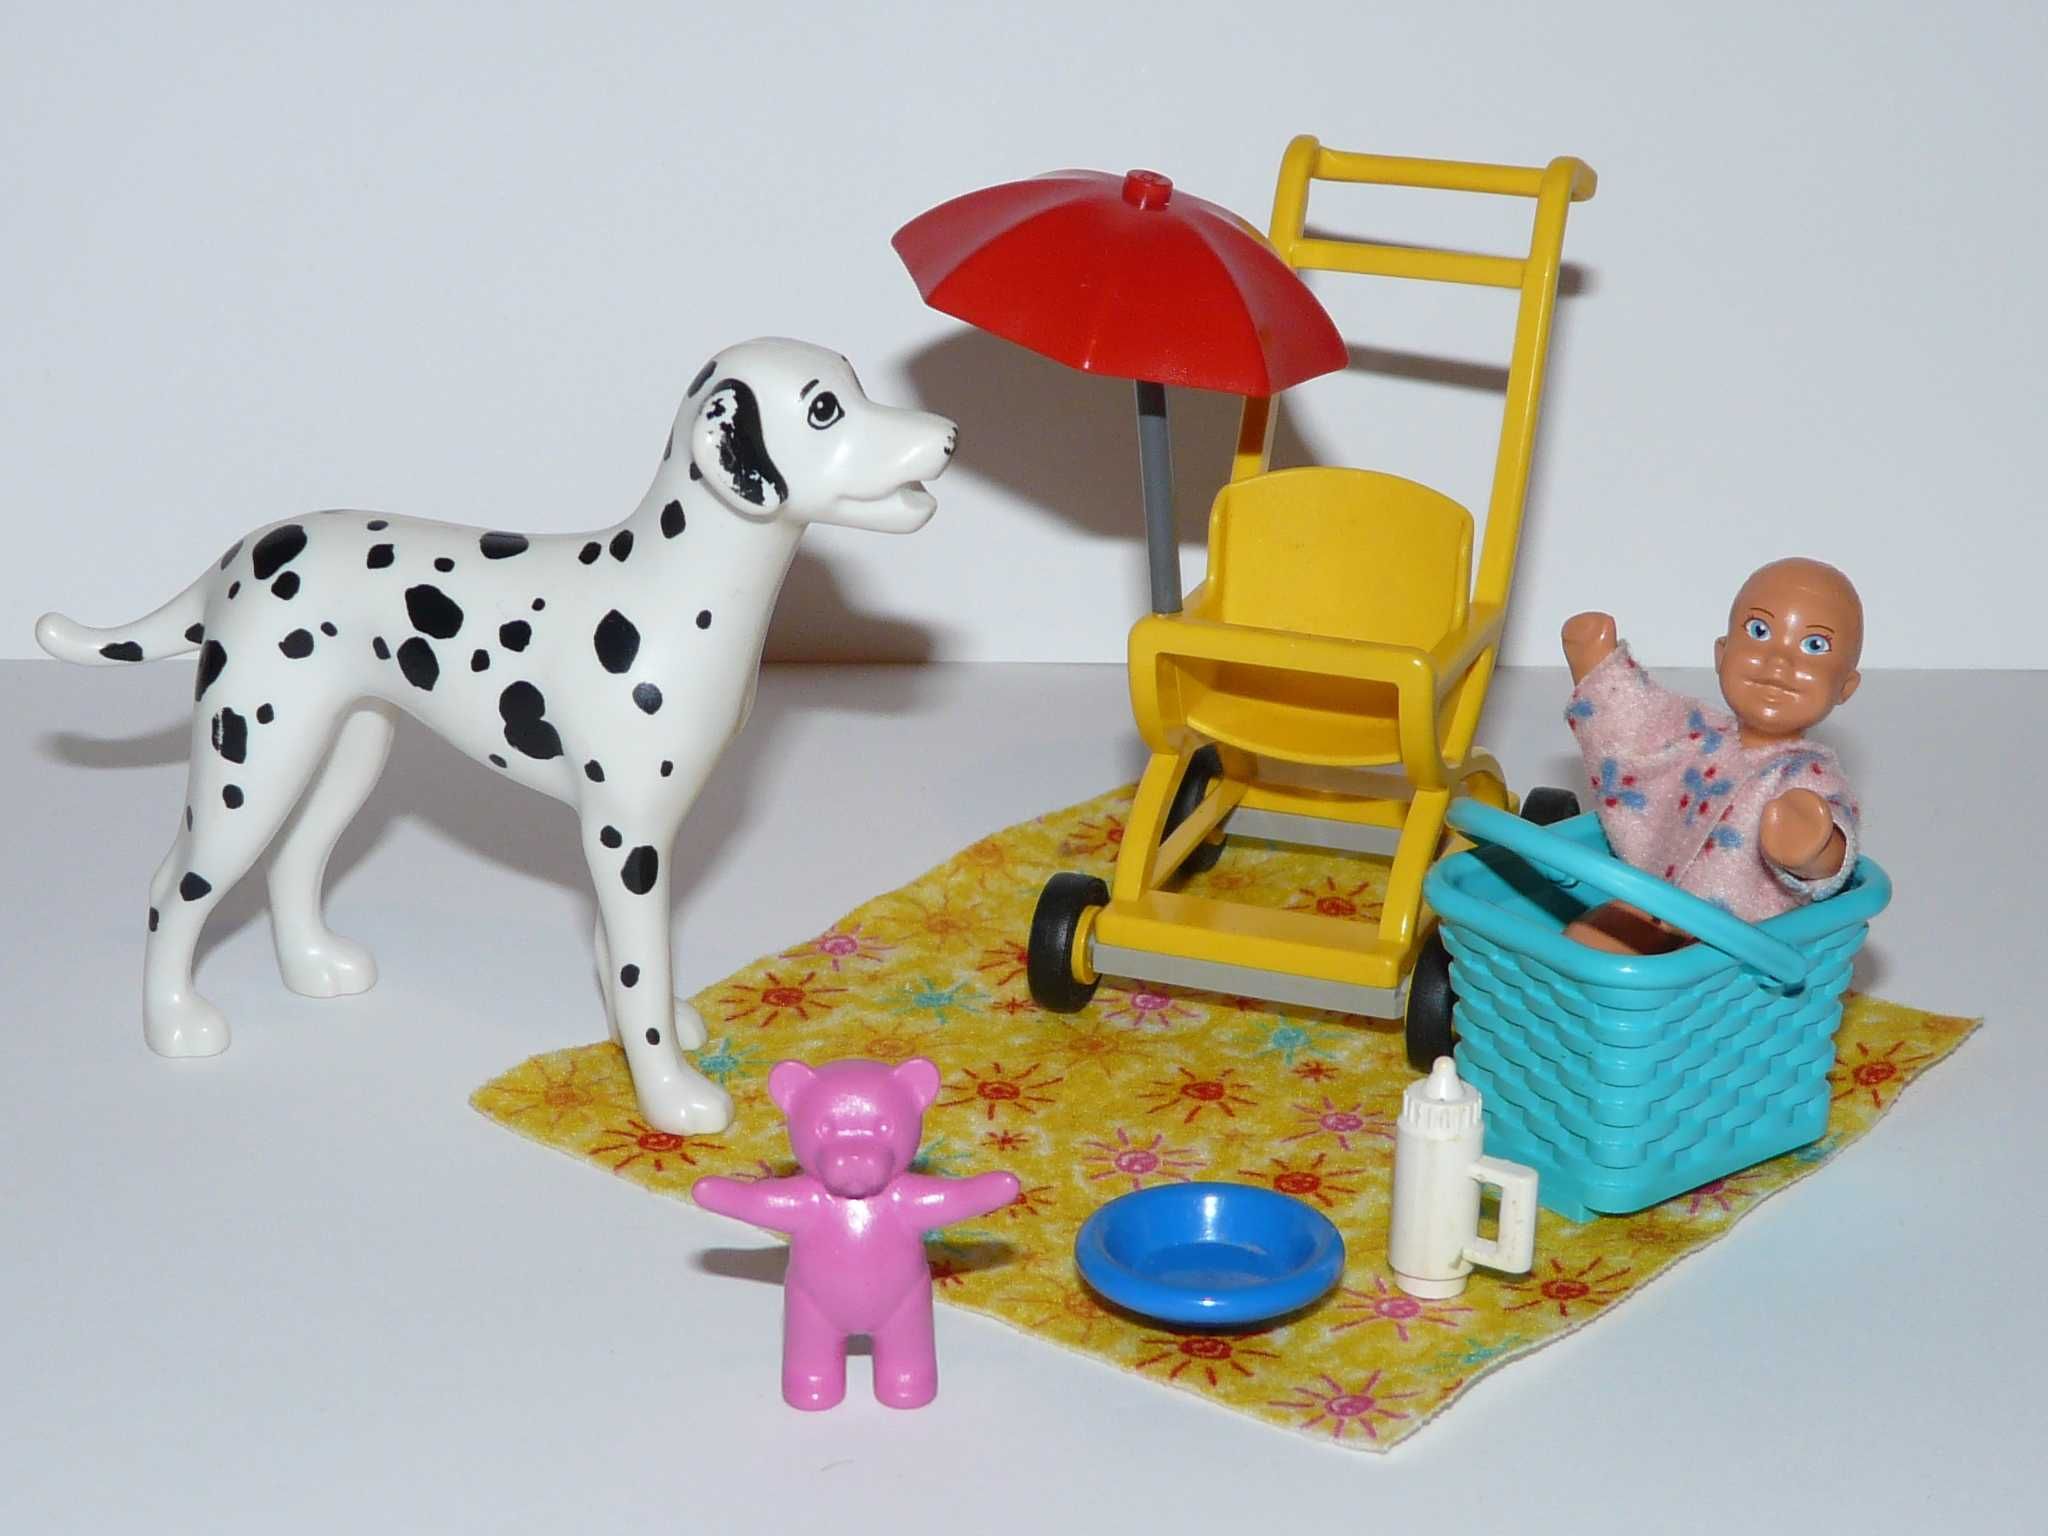 Lego scala belville friends wózek niemowlak pies dalmatyńczyk miś